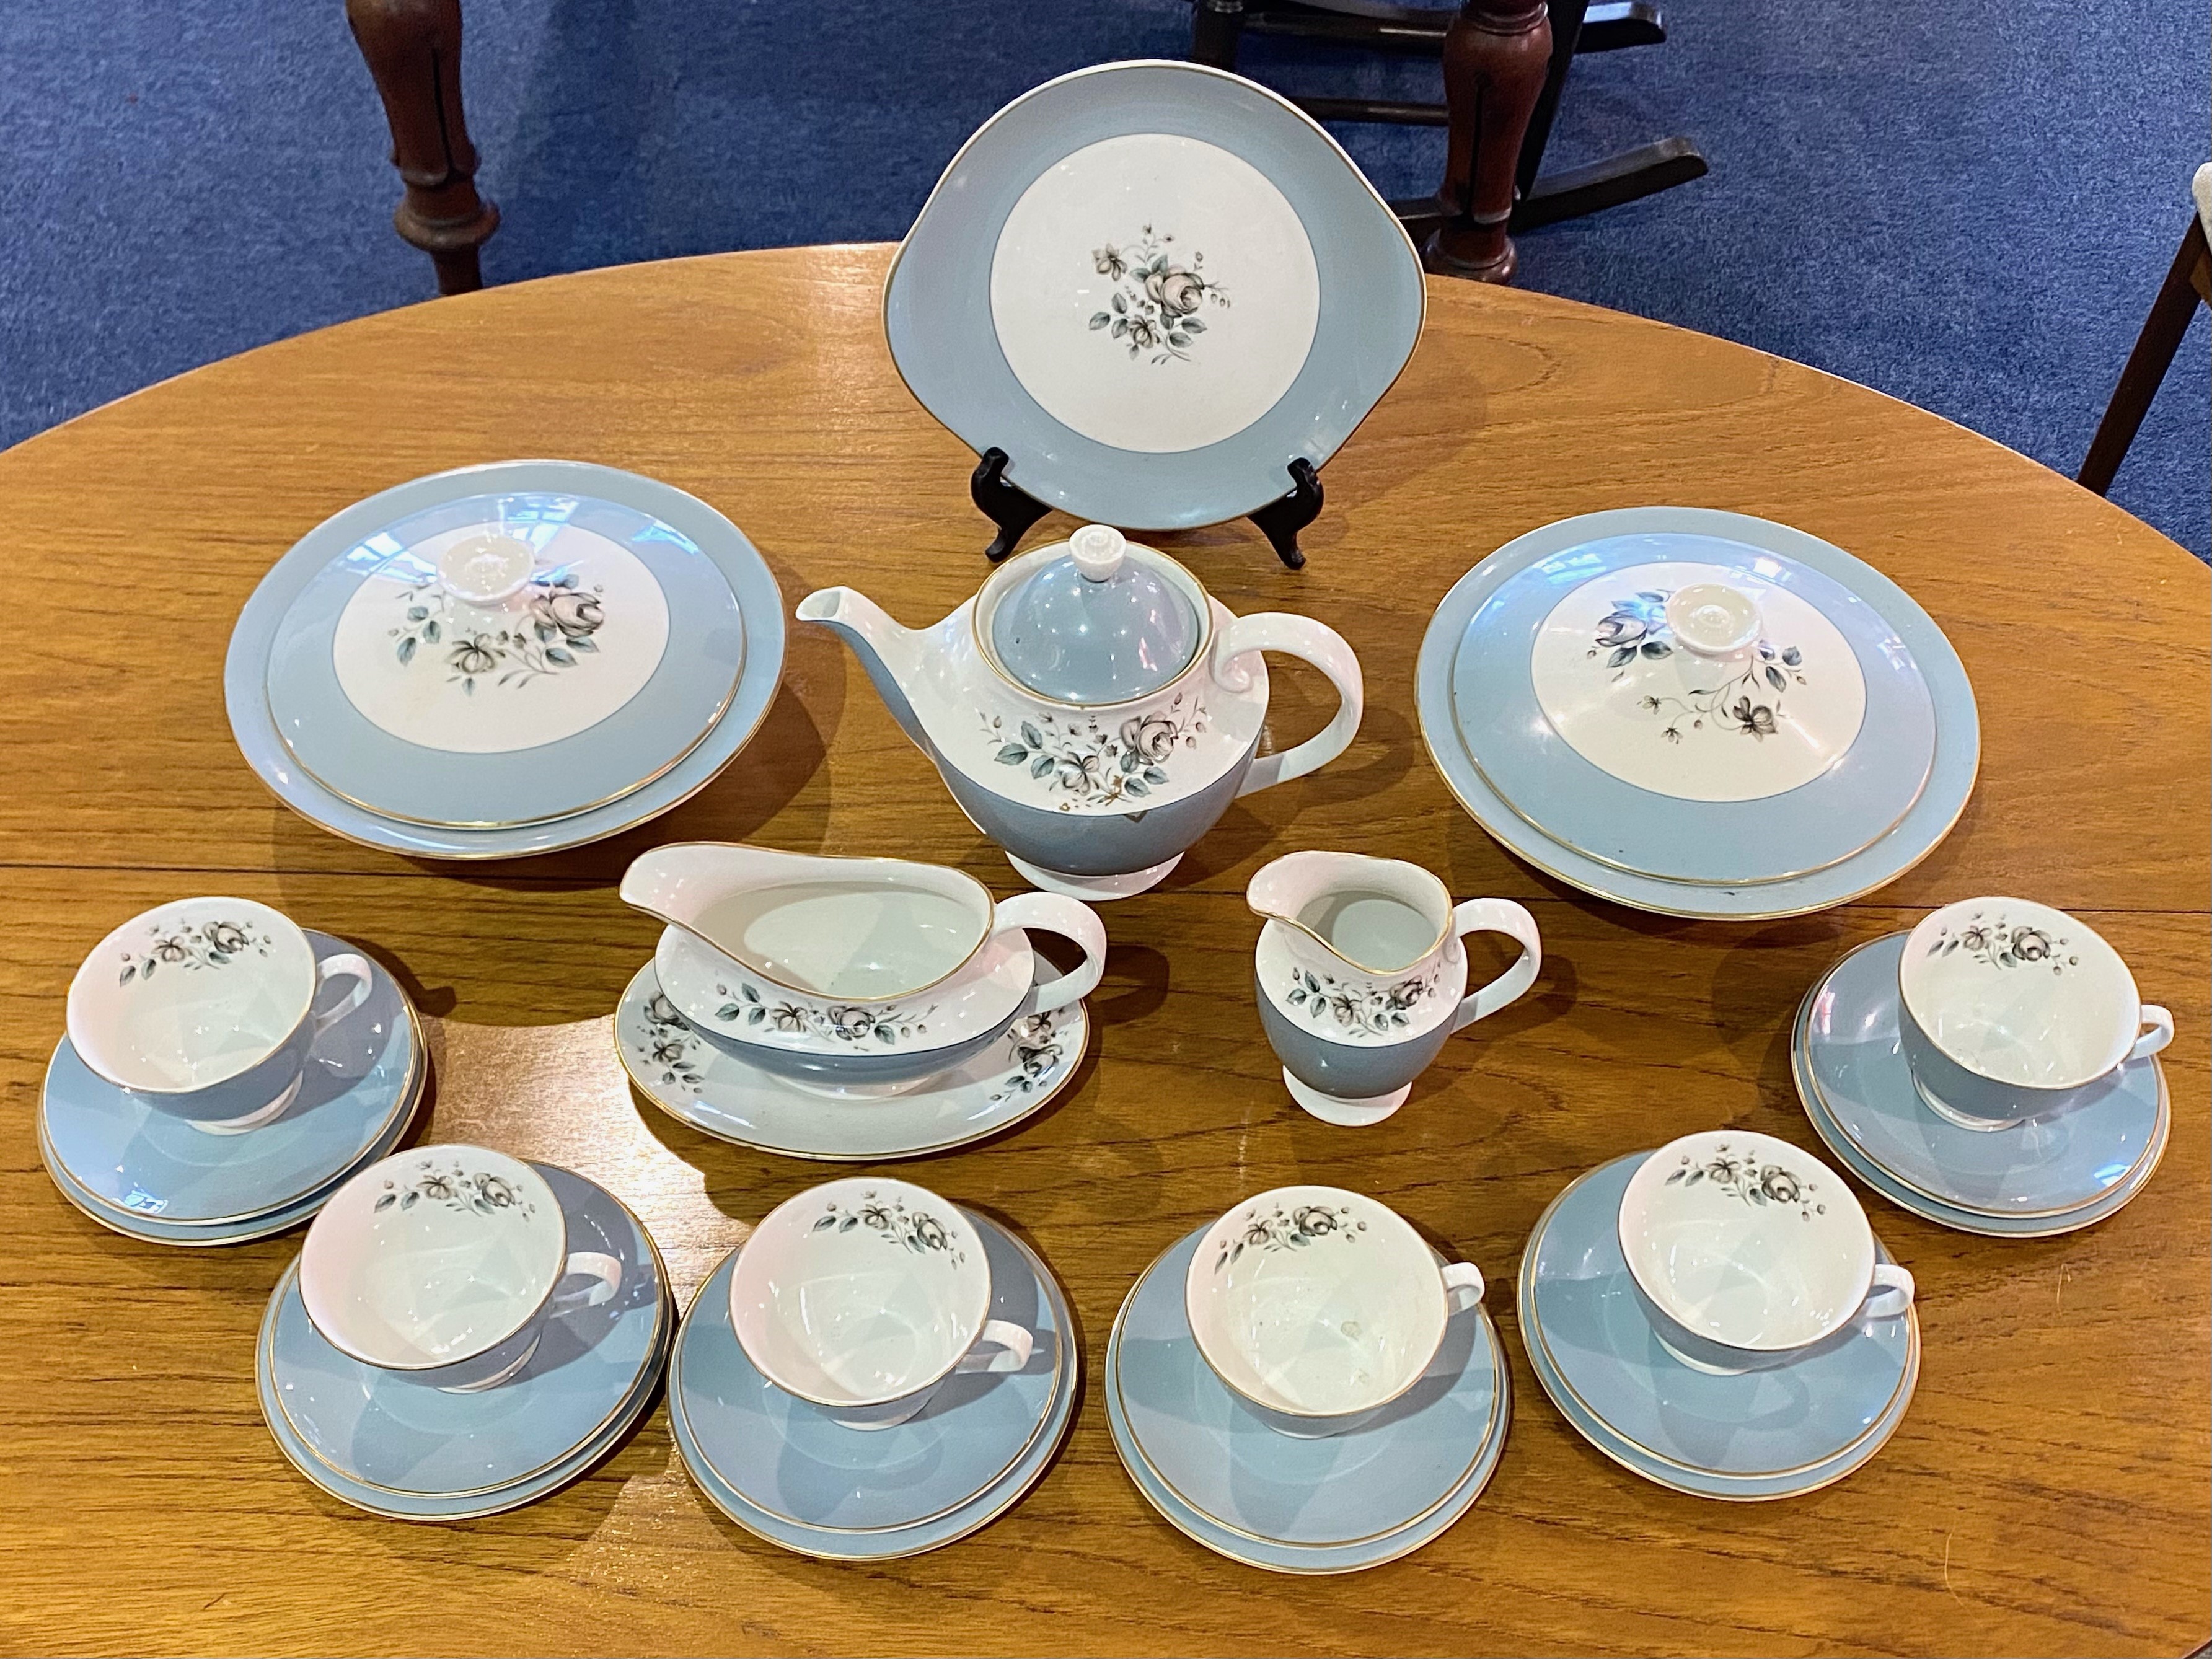 A Royal Doulton Rose Elegans Part Tea Set to include, 2 soup bowls/lids, 1 gravy boat/saucer, 1